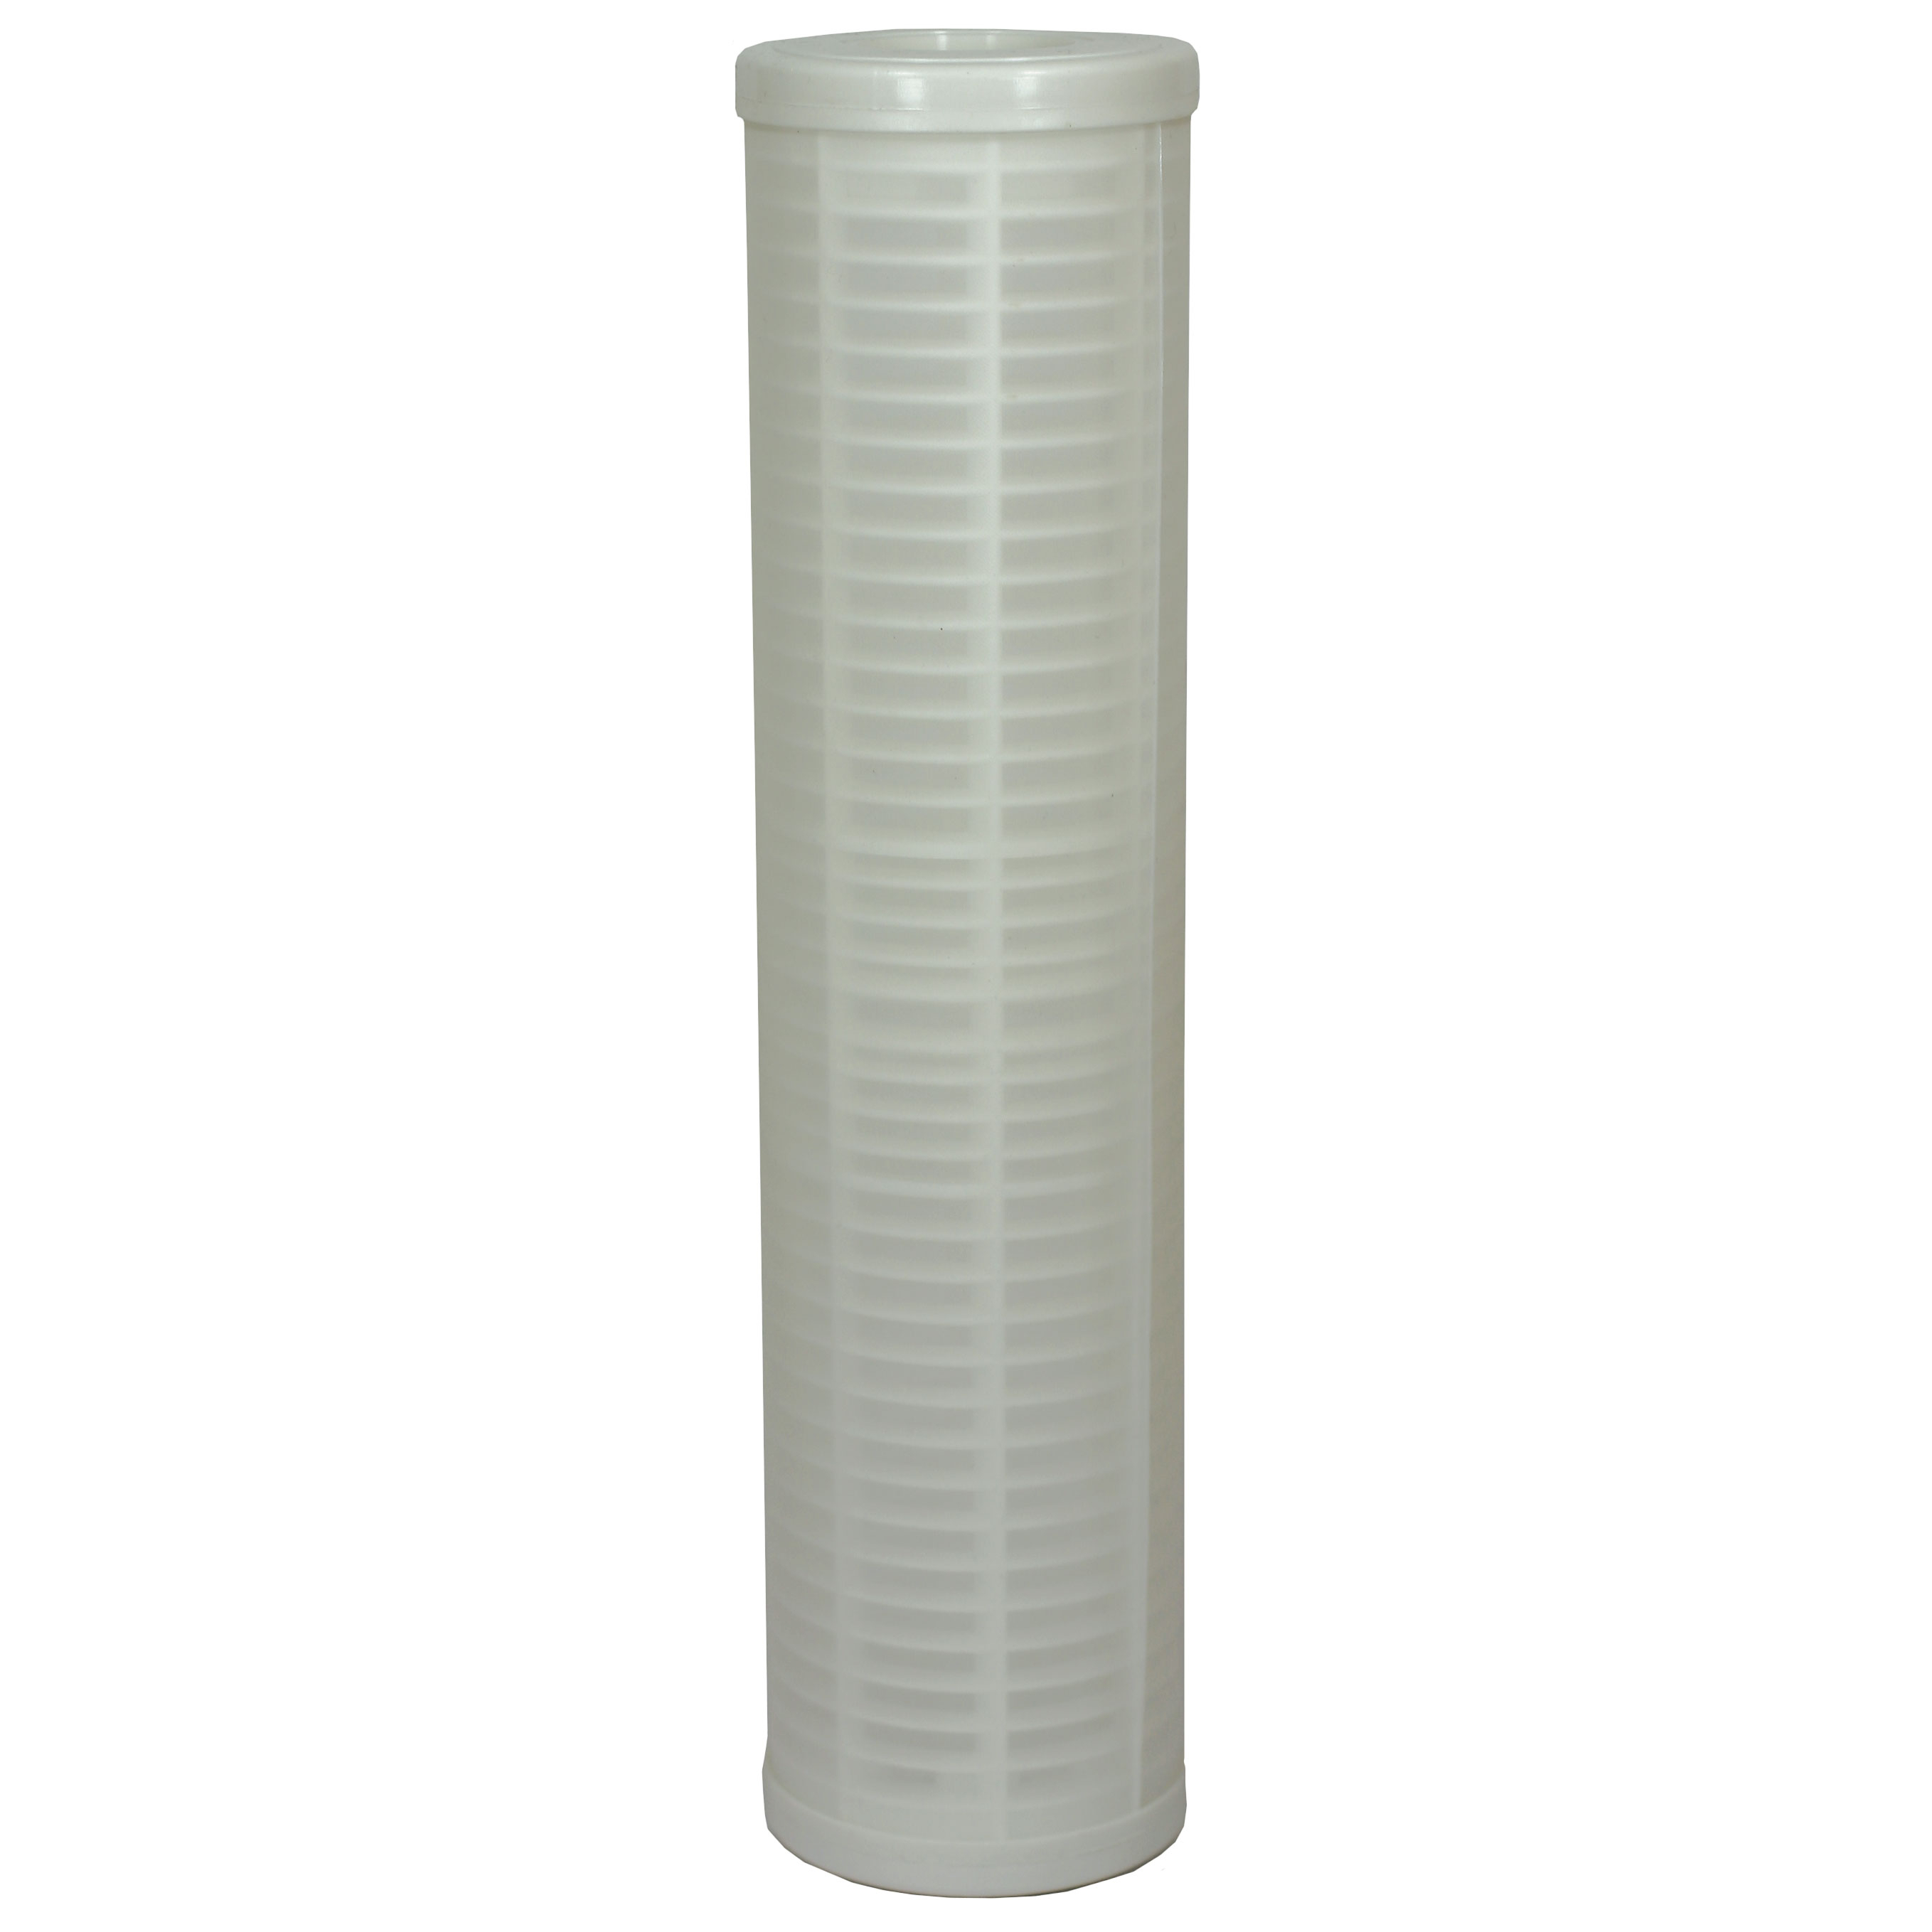 Cartouche filtrante en PVC lavable, filtration 60 Micron - Filtre 9.3/4 - Hauteur 250 mm